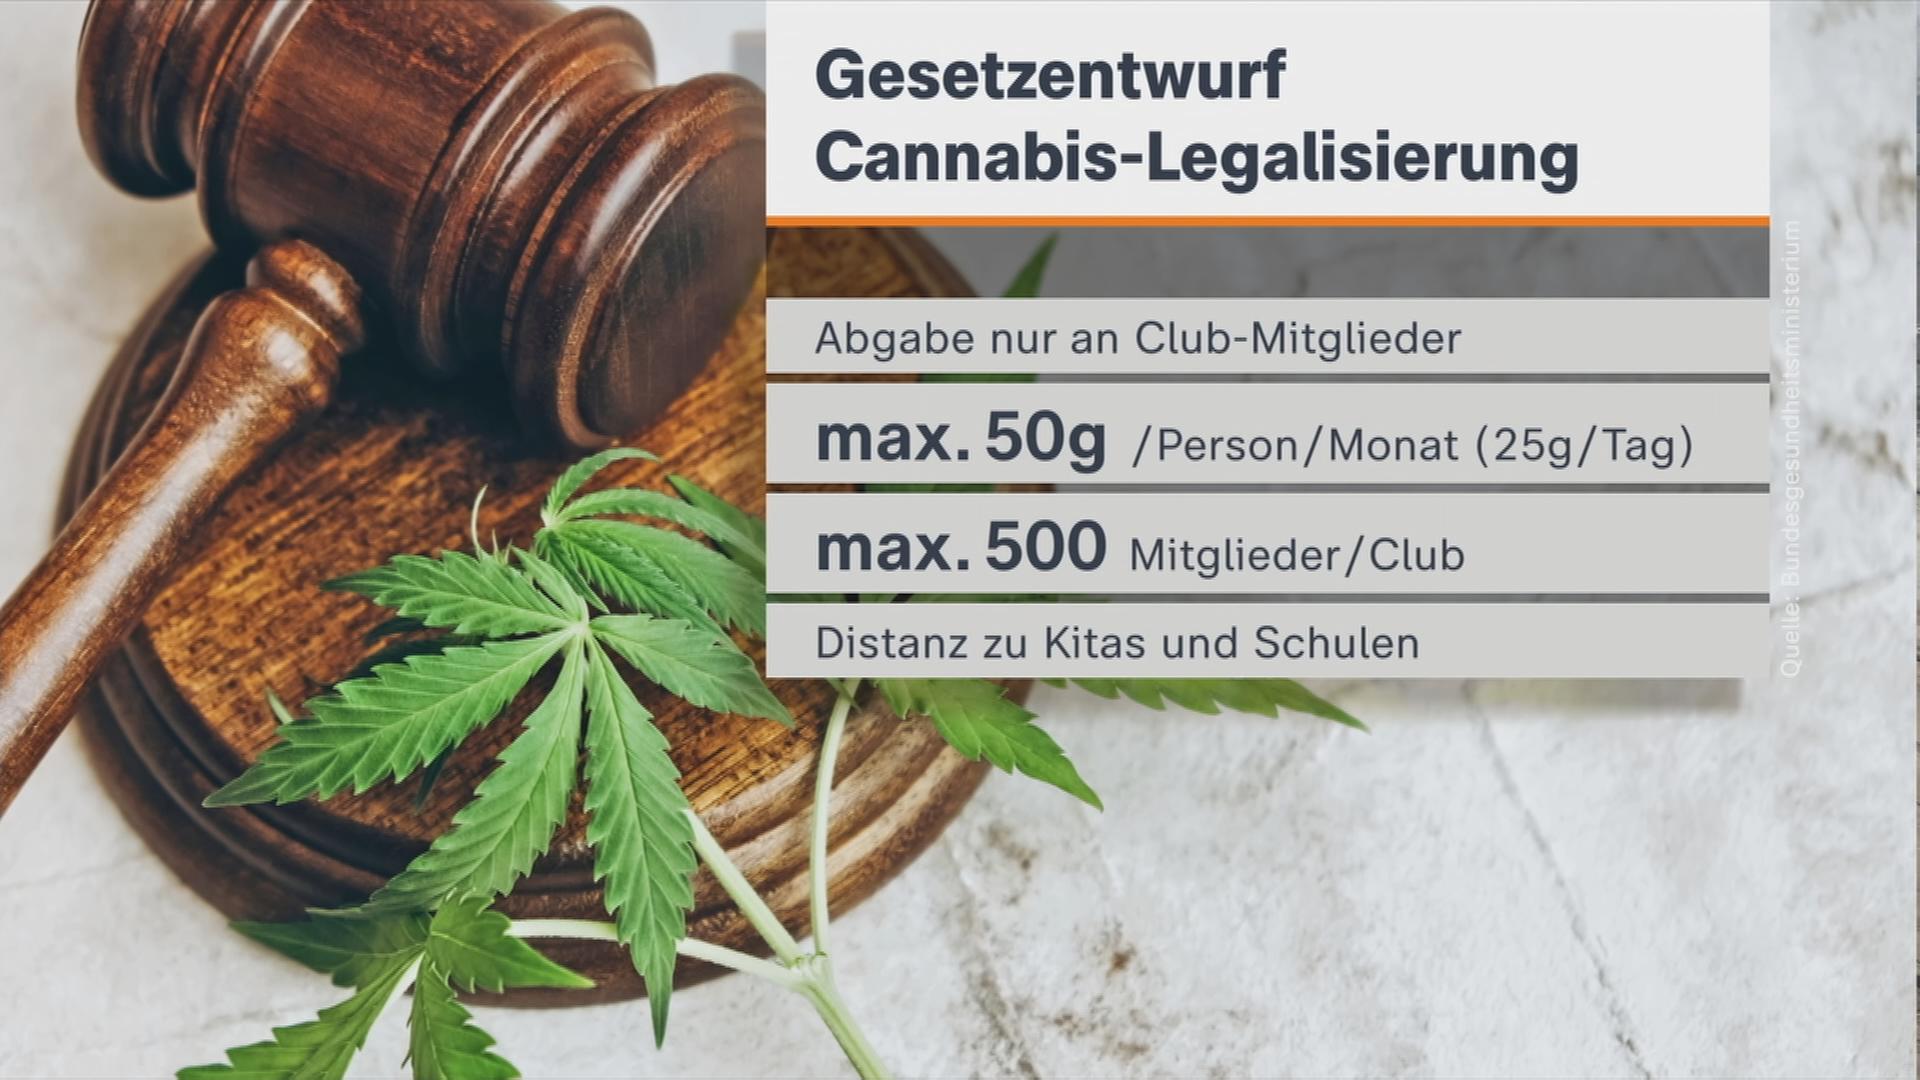 Gesetzentwurf zur Cannabis-Legalisierung